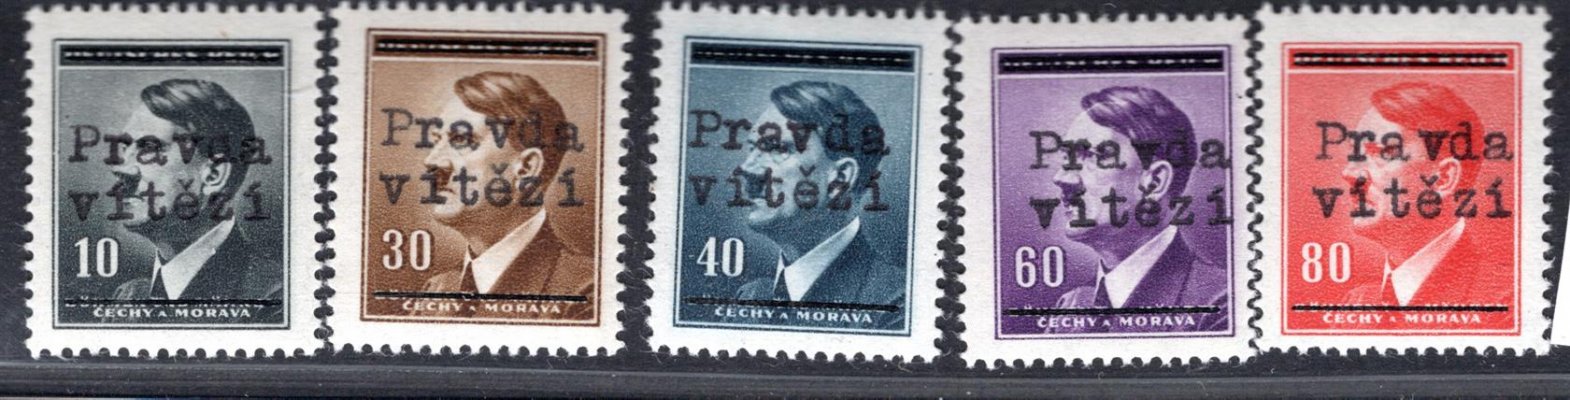 Plzeň IV -  sestava  známek s přetiskem